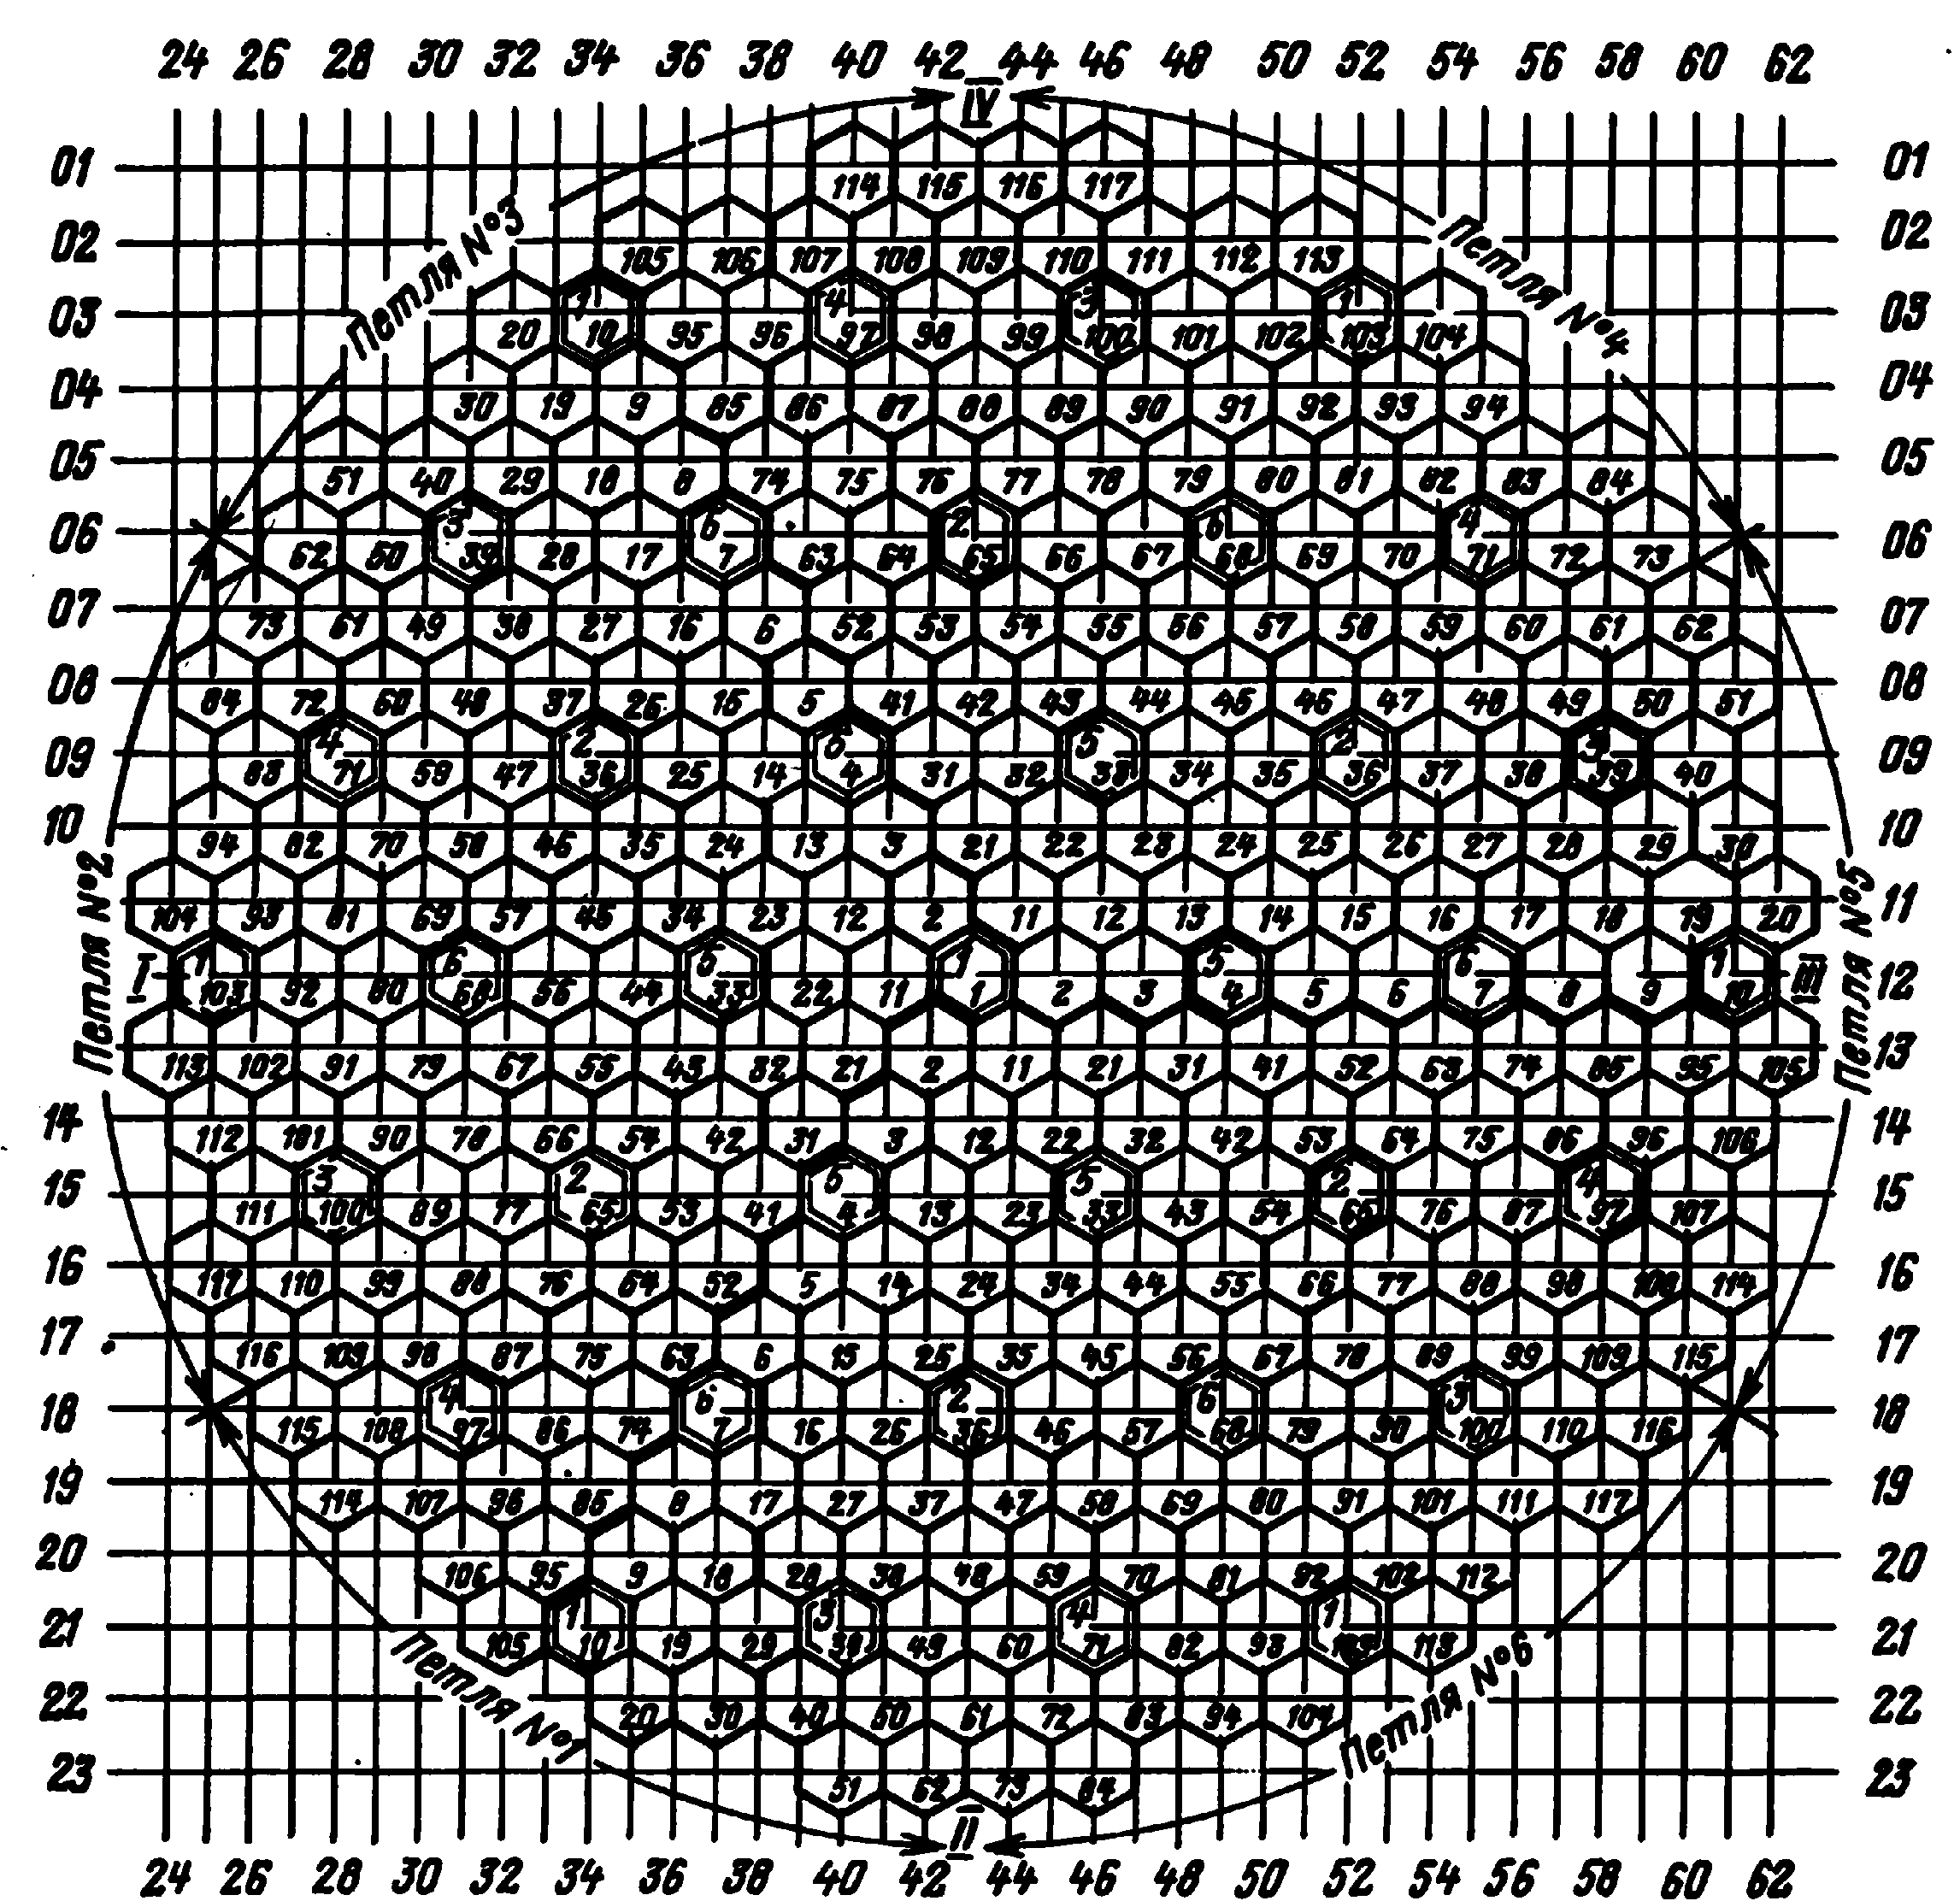 Картограмма размещения групп стержней СУЗ в ВВЭР-440 Кольской АЭС